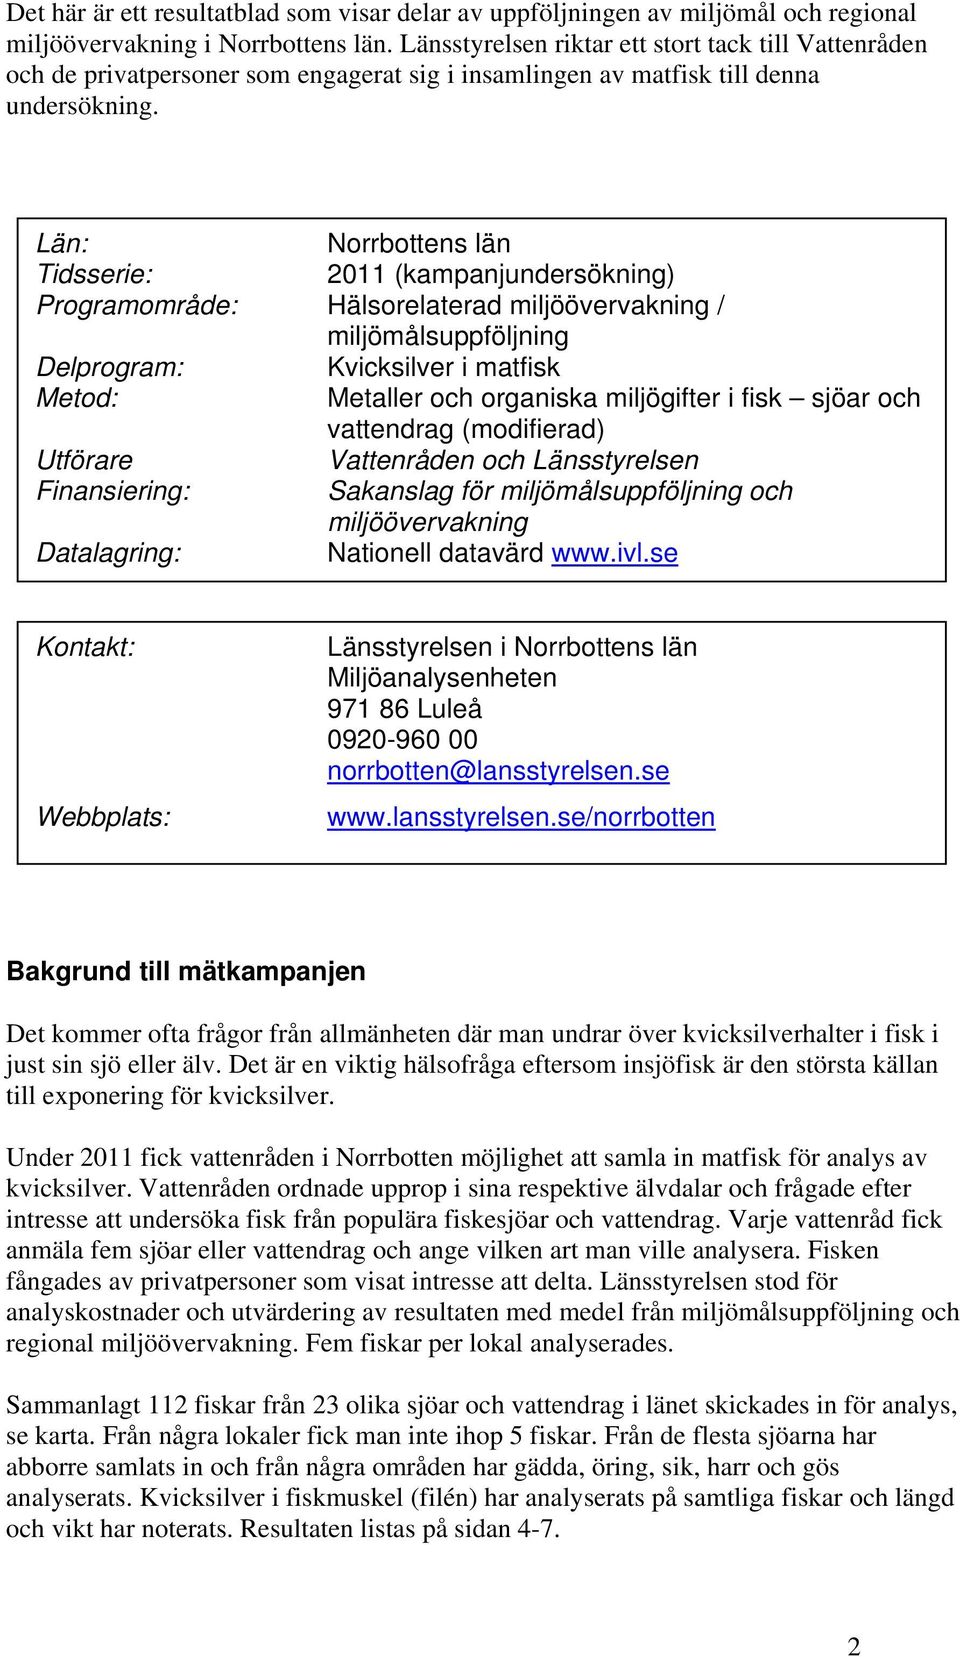 Län: Norrbottens län Tidsserie: 2011 (kampanjundersökning) Programområde: Hälsorelaterad miljöövervakning / miljömålsuppföljning Delprogram: Kvicksilver i matfisk Metod: Metaller och organiska